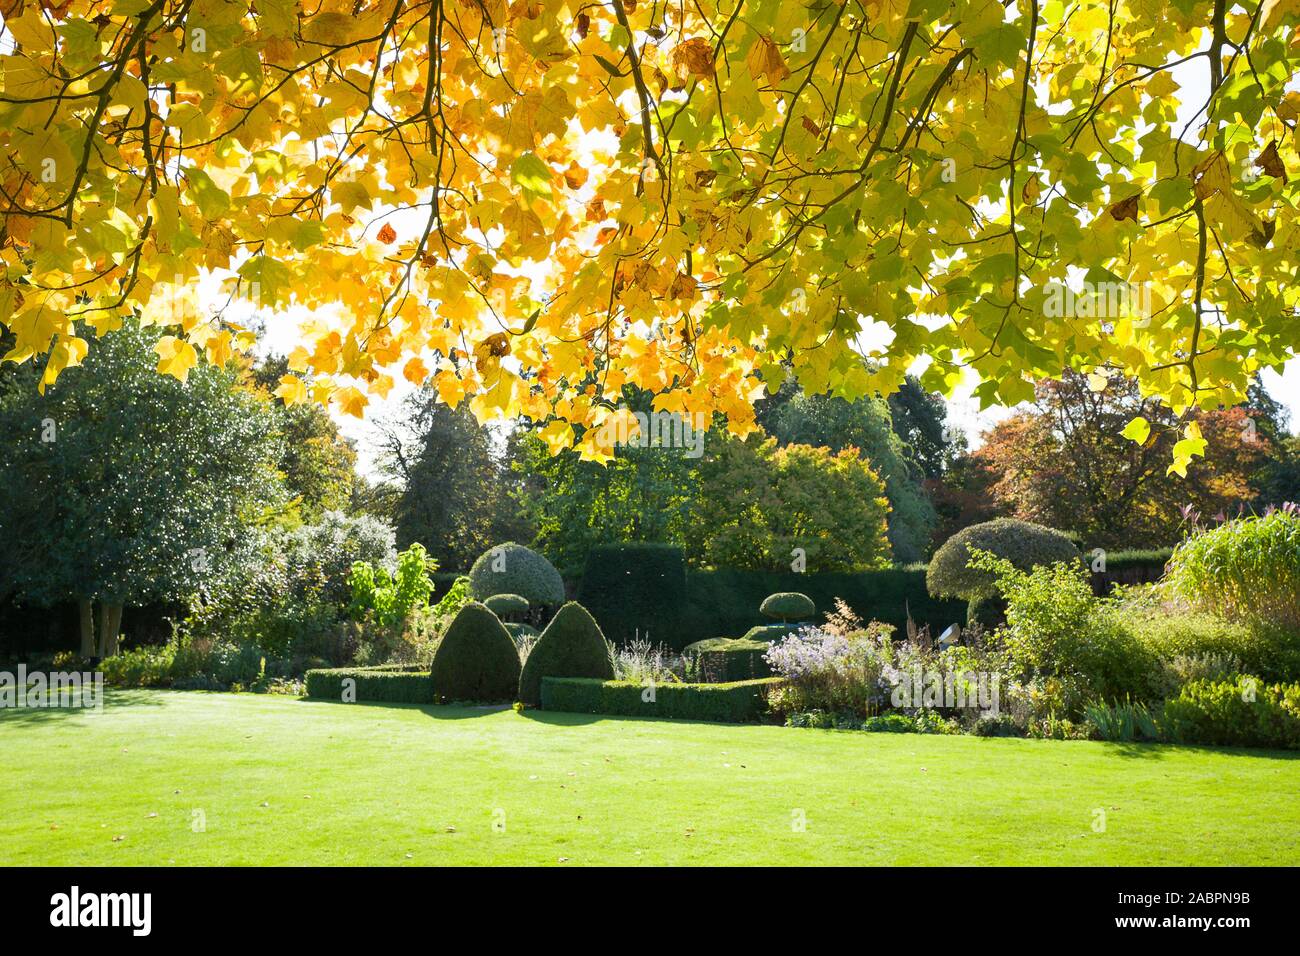 Les feuilles d'automne d'un jeune arbre tulipe ajouter intérêt de premier plan pour cette vue d'un jardin anglais en octobre UK Banque D'Images